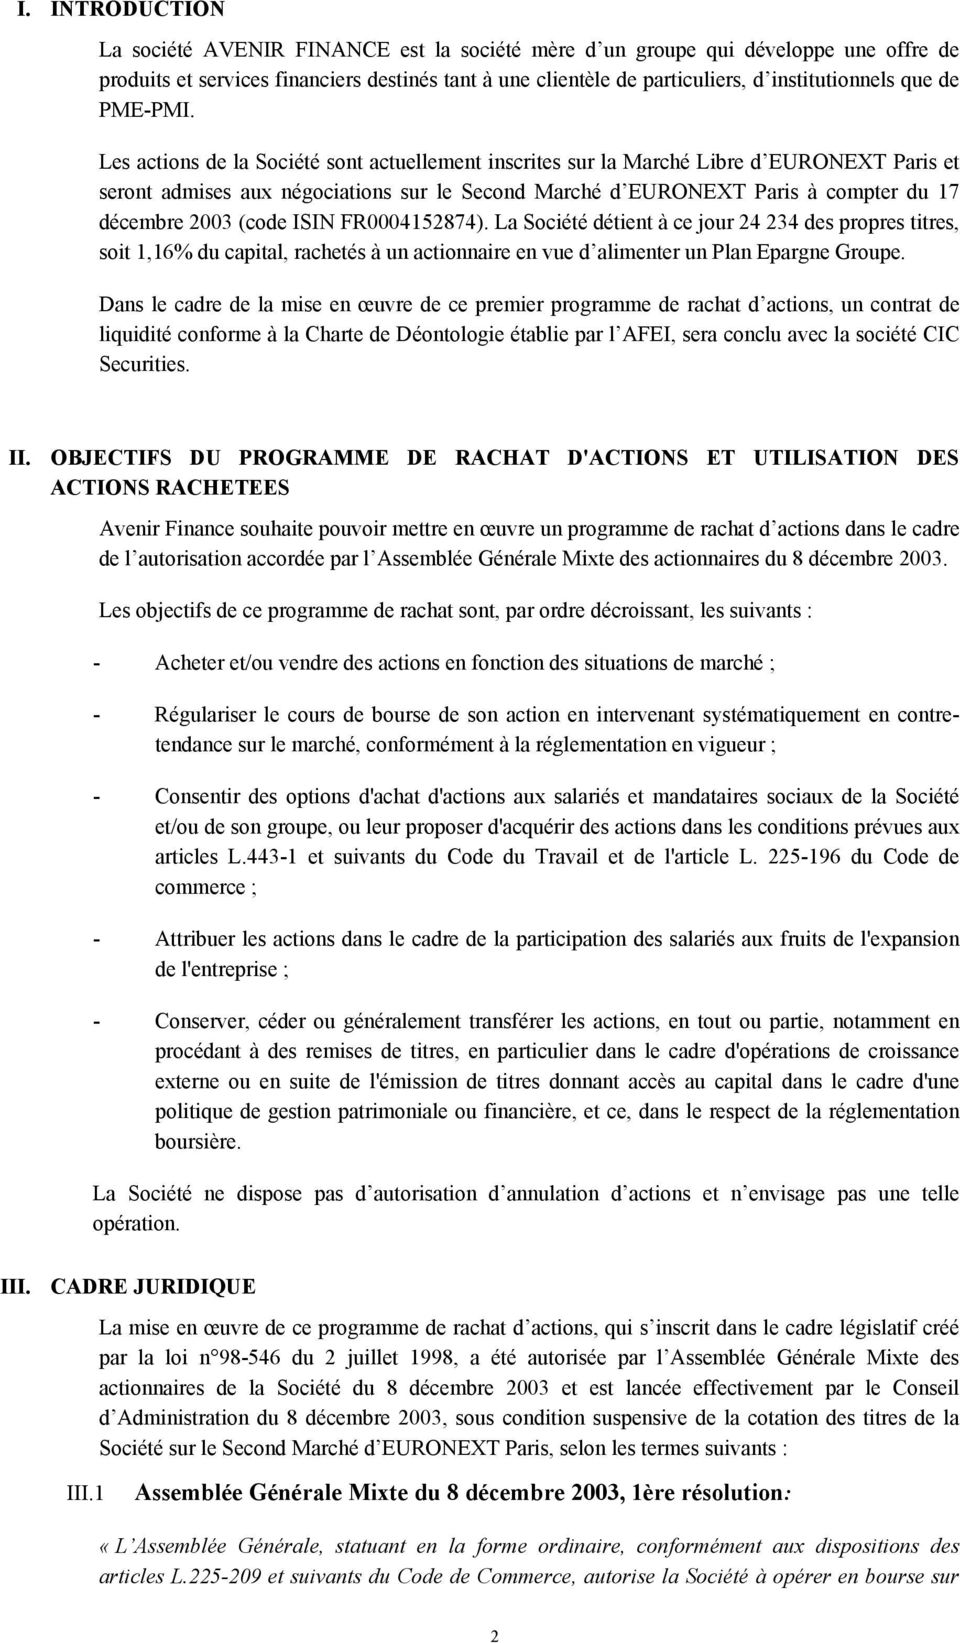 Les actions de la Société sont actuellement inscrites sur la Marché Libre d EURONEXT Paris et seront admises aux négociations sur le Second Marché d EURONEXT Paris à compter du 17 décembre 2003 (code